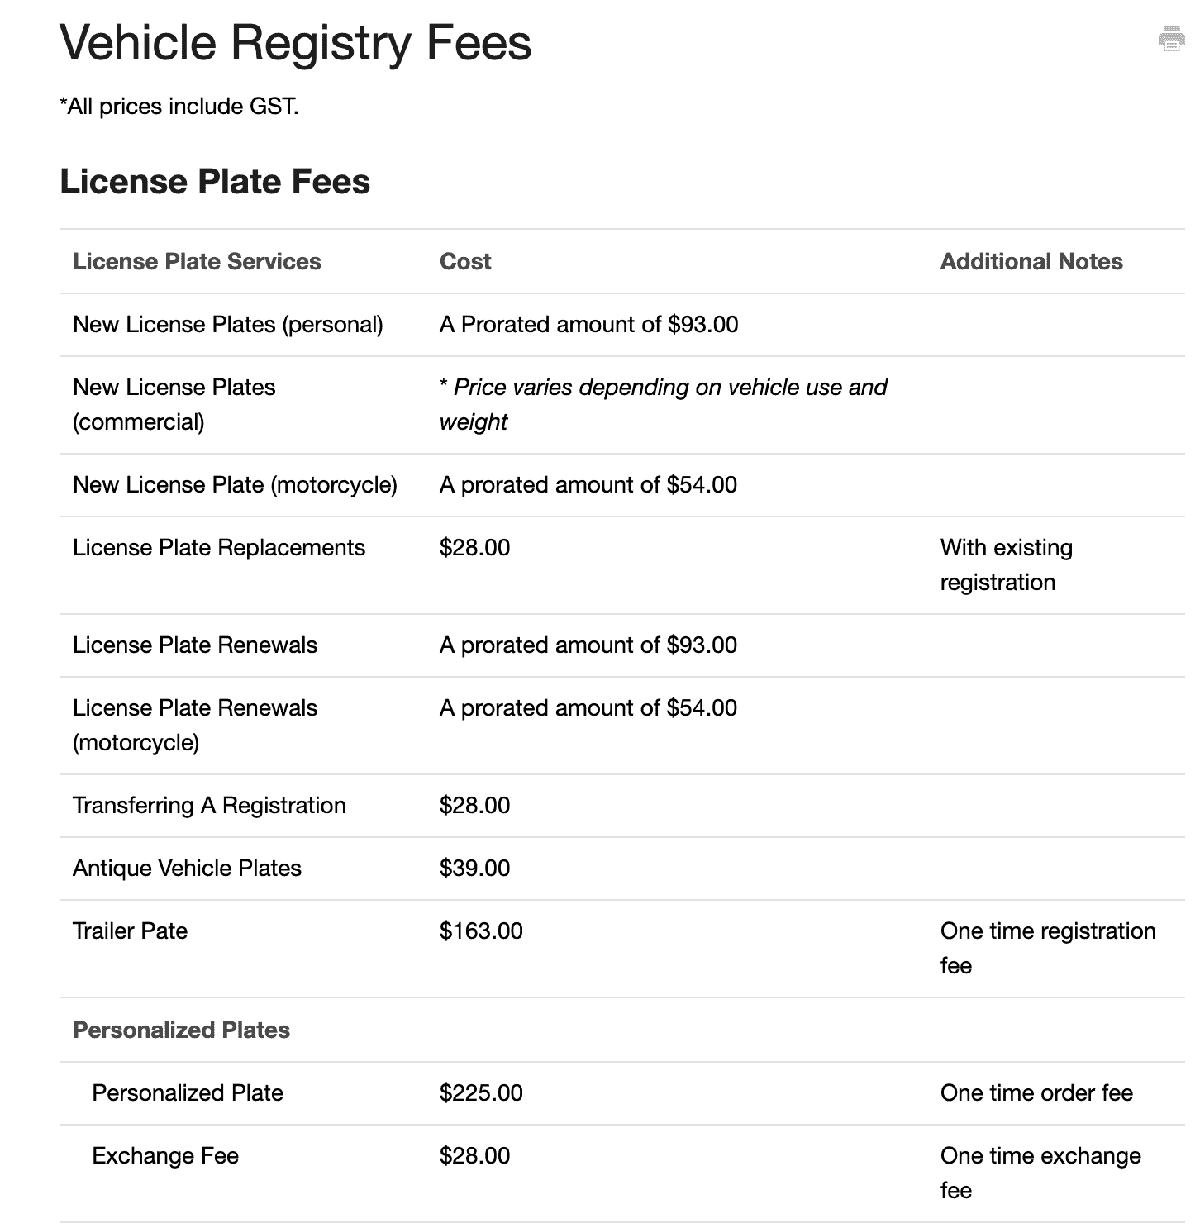 Vehicle Registry Fee Image